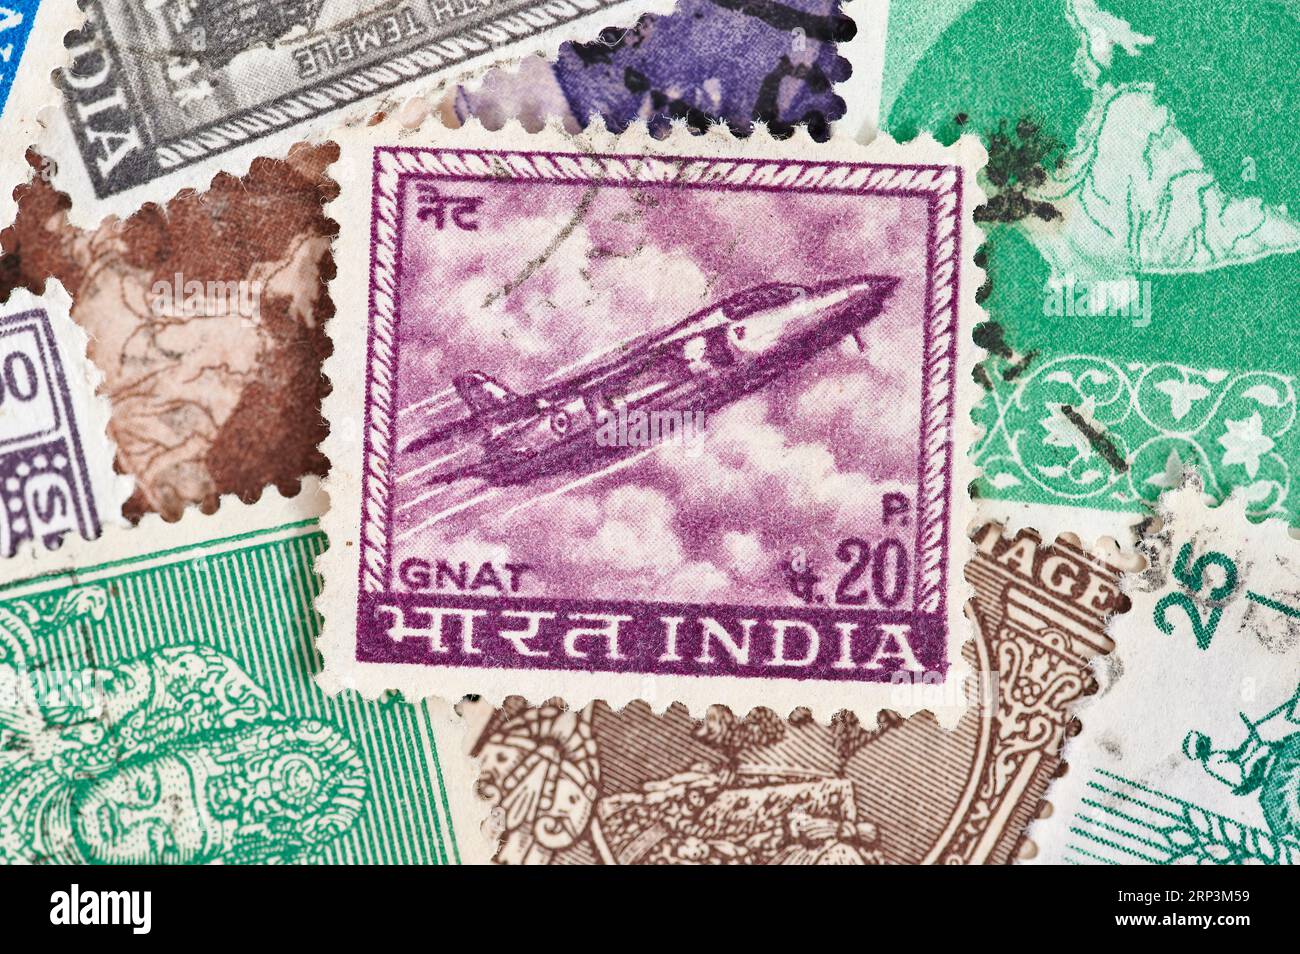 Madrid, Espagne ; 08-13-2023, timbre-poste indien, d'une valeur de 20 pence roupies avec une illustration de l'avion de combat militaire ''GNAt''. (1967) avec mo Banque D'Images